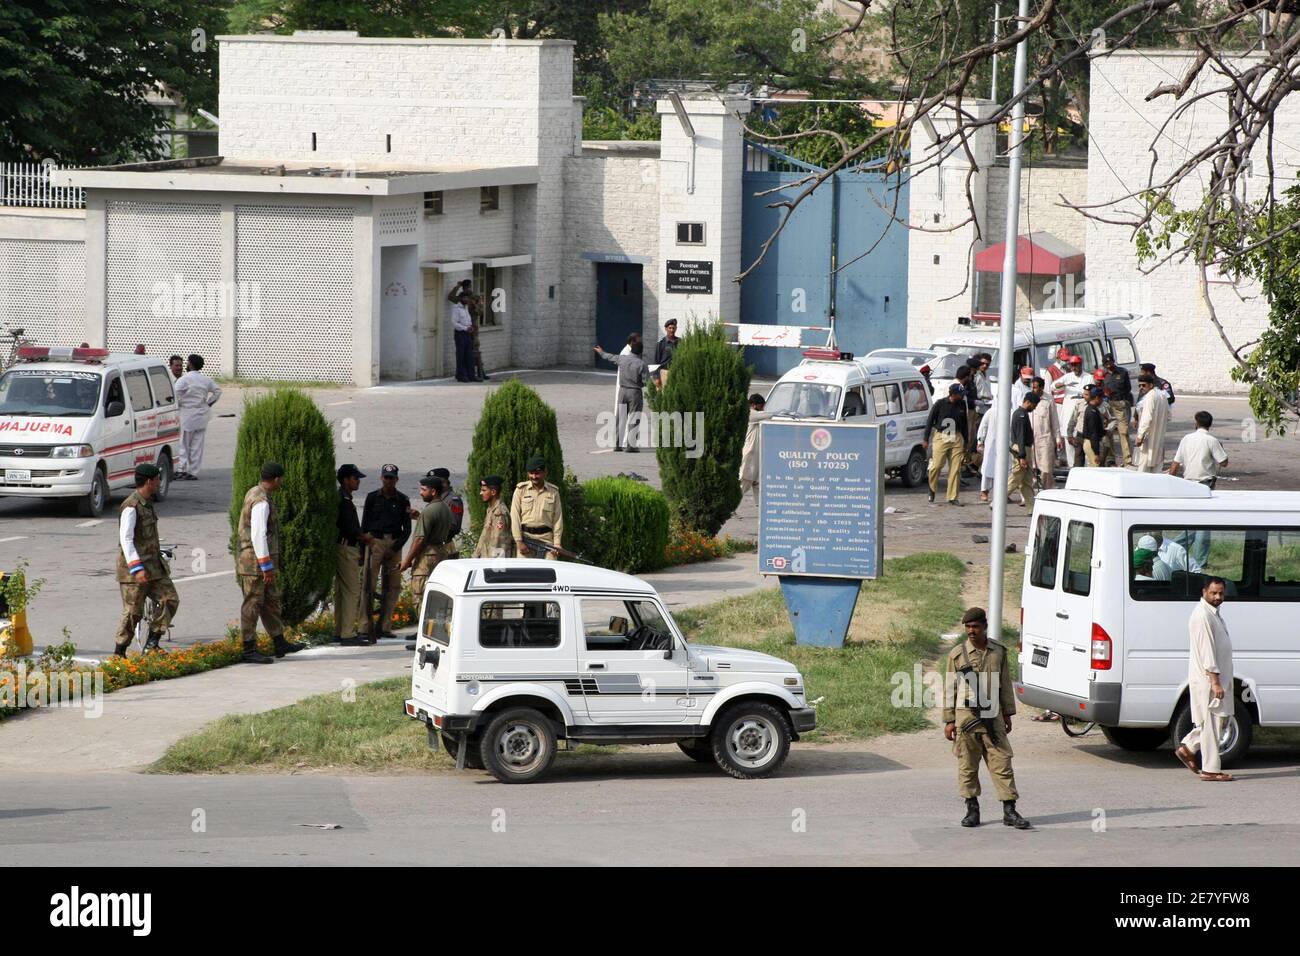 Pakistanische Sicherheitskräfte untersuchen die Website von einem Selbstmordattentat an einem Tor von Pakistans Verordnung Fabrik in Wah, eine Garnison Stadt etwa 30 km (20 Meilen) nordwestlich von Islamabad 21. August 2008. Zwei Selbstmordattentäter blies sich außerhalb Pakistans Haupt Verteidigung-Industrie-Komplexes am Donnerstag als Arbeitnehmer am Ende ihrer Schicht gingen fast 40 Menschen getötet, Polizei sagte.    REUTERS/Faisal Mahmood (PAKISTAN) Stockfoto